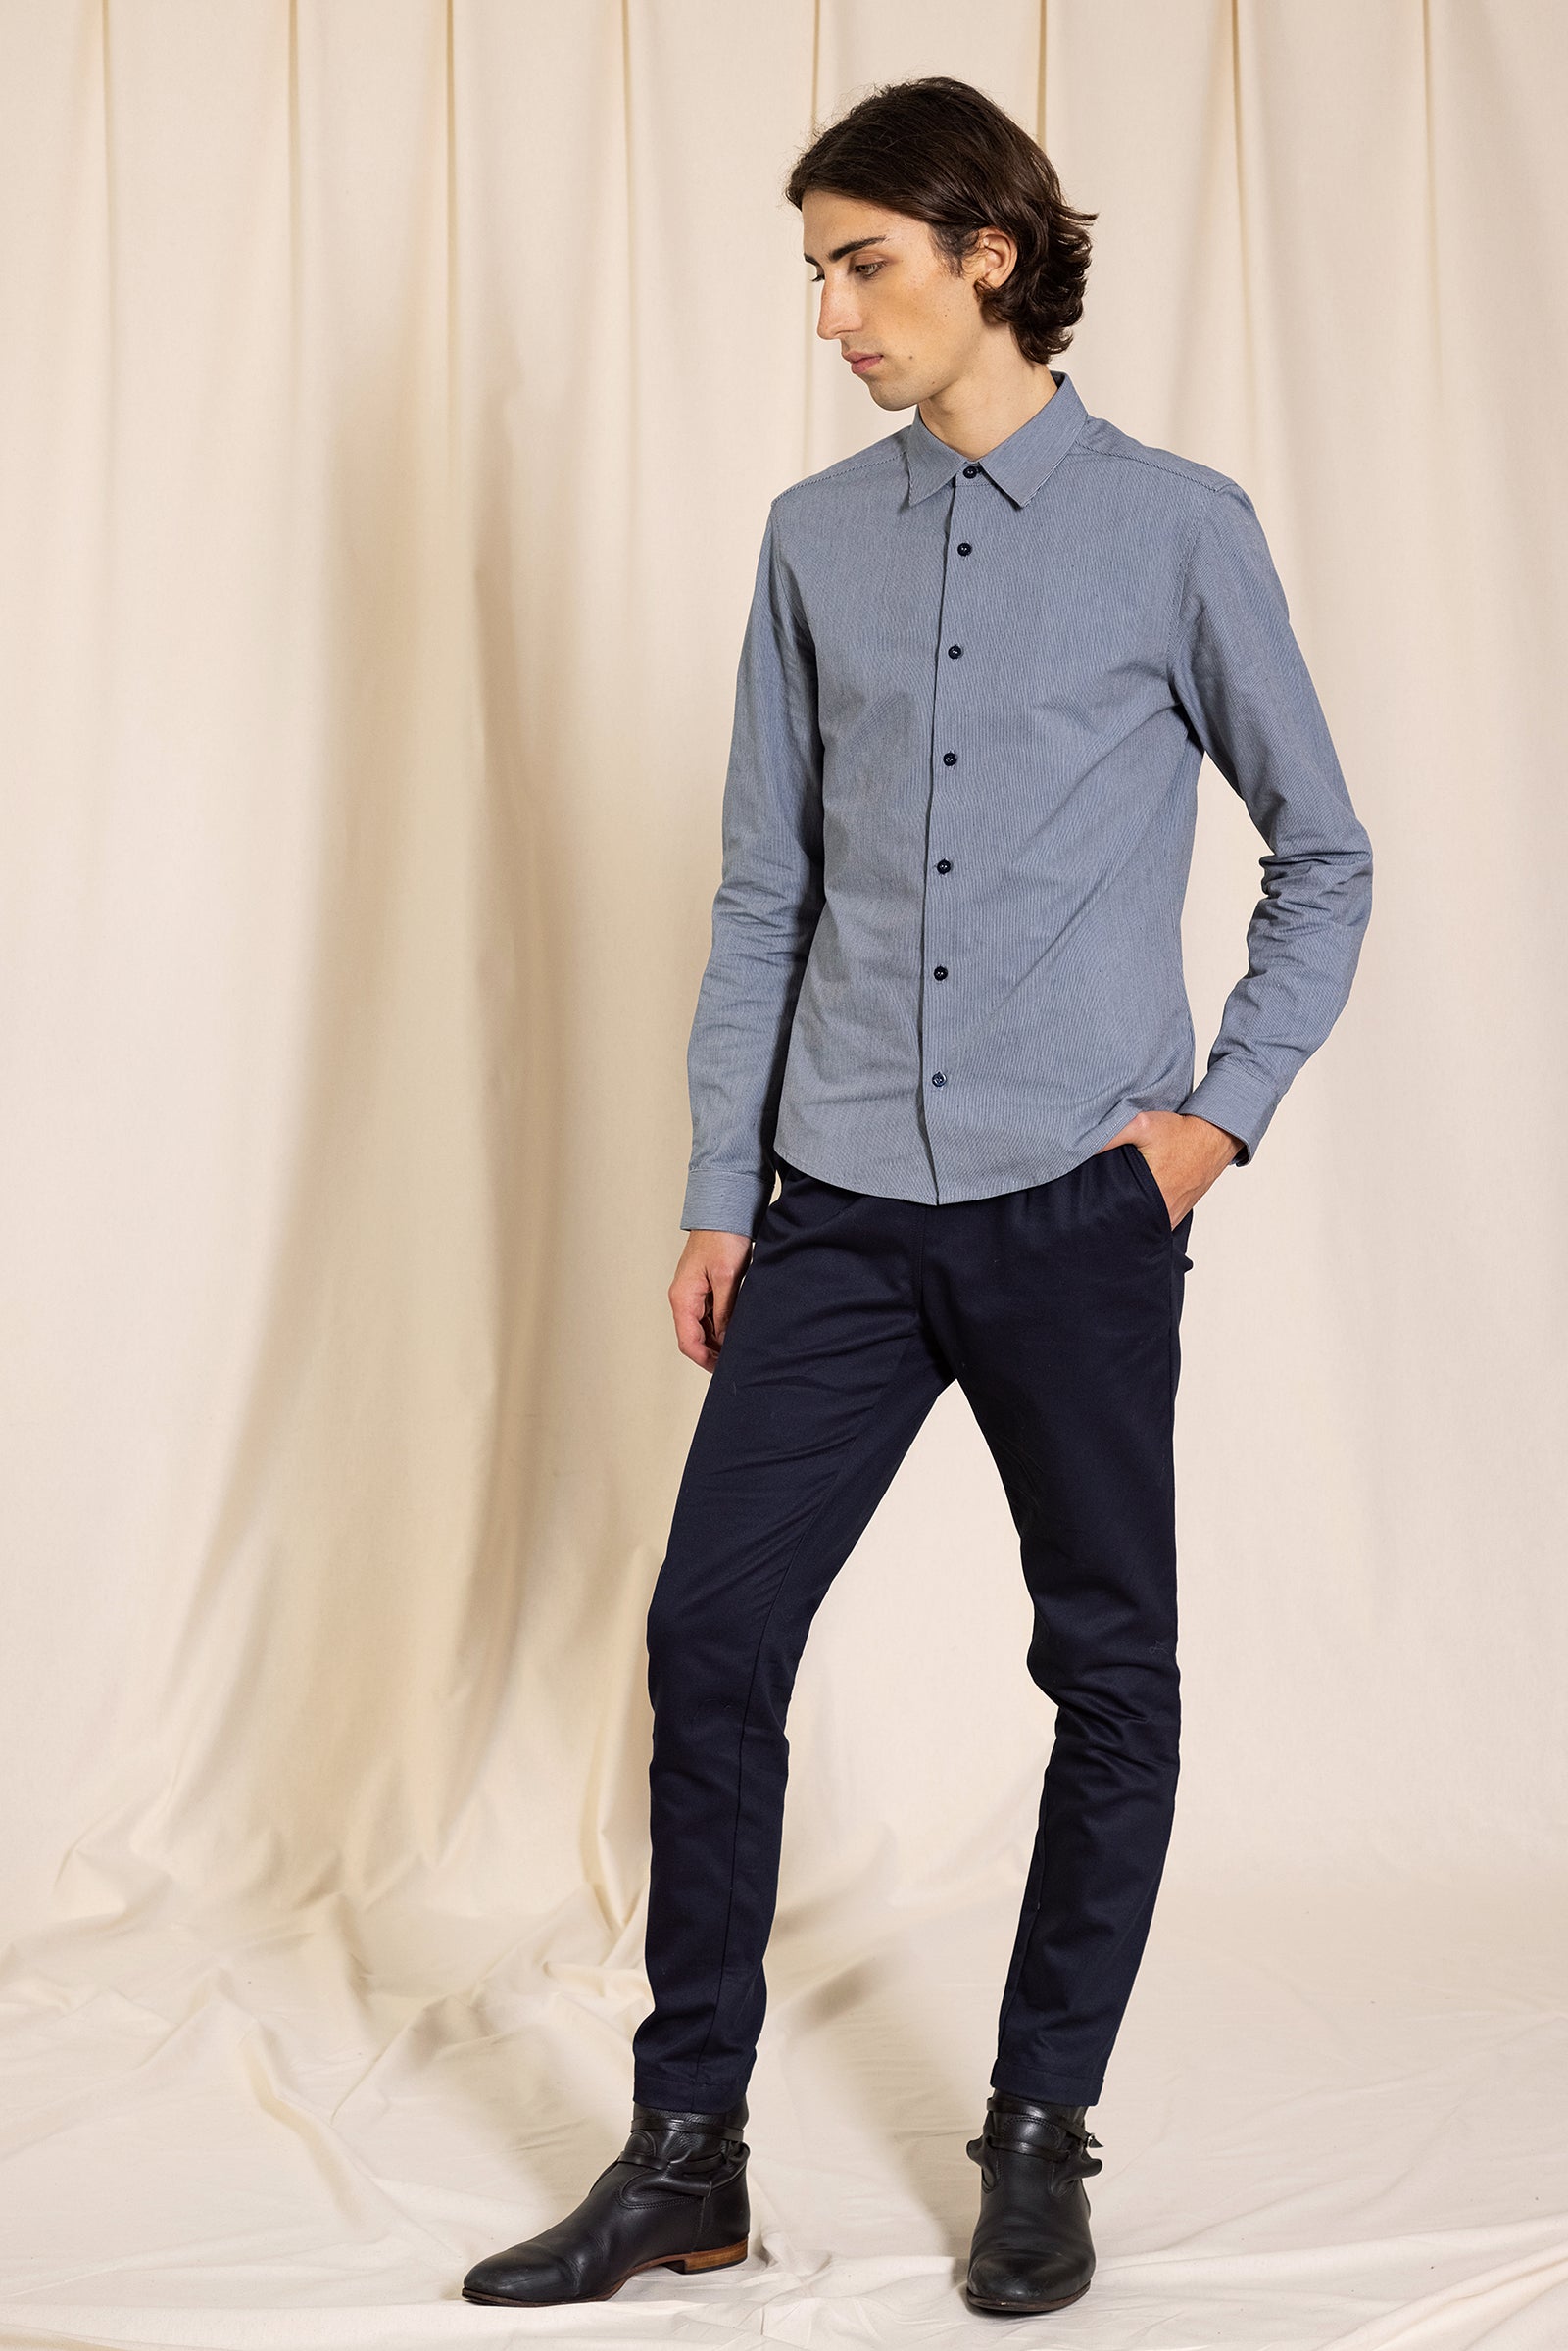 Chemise grise bleu boutonnée rayures fines cintrée homme intemporel élégante masculine 